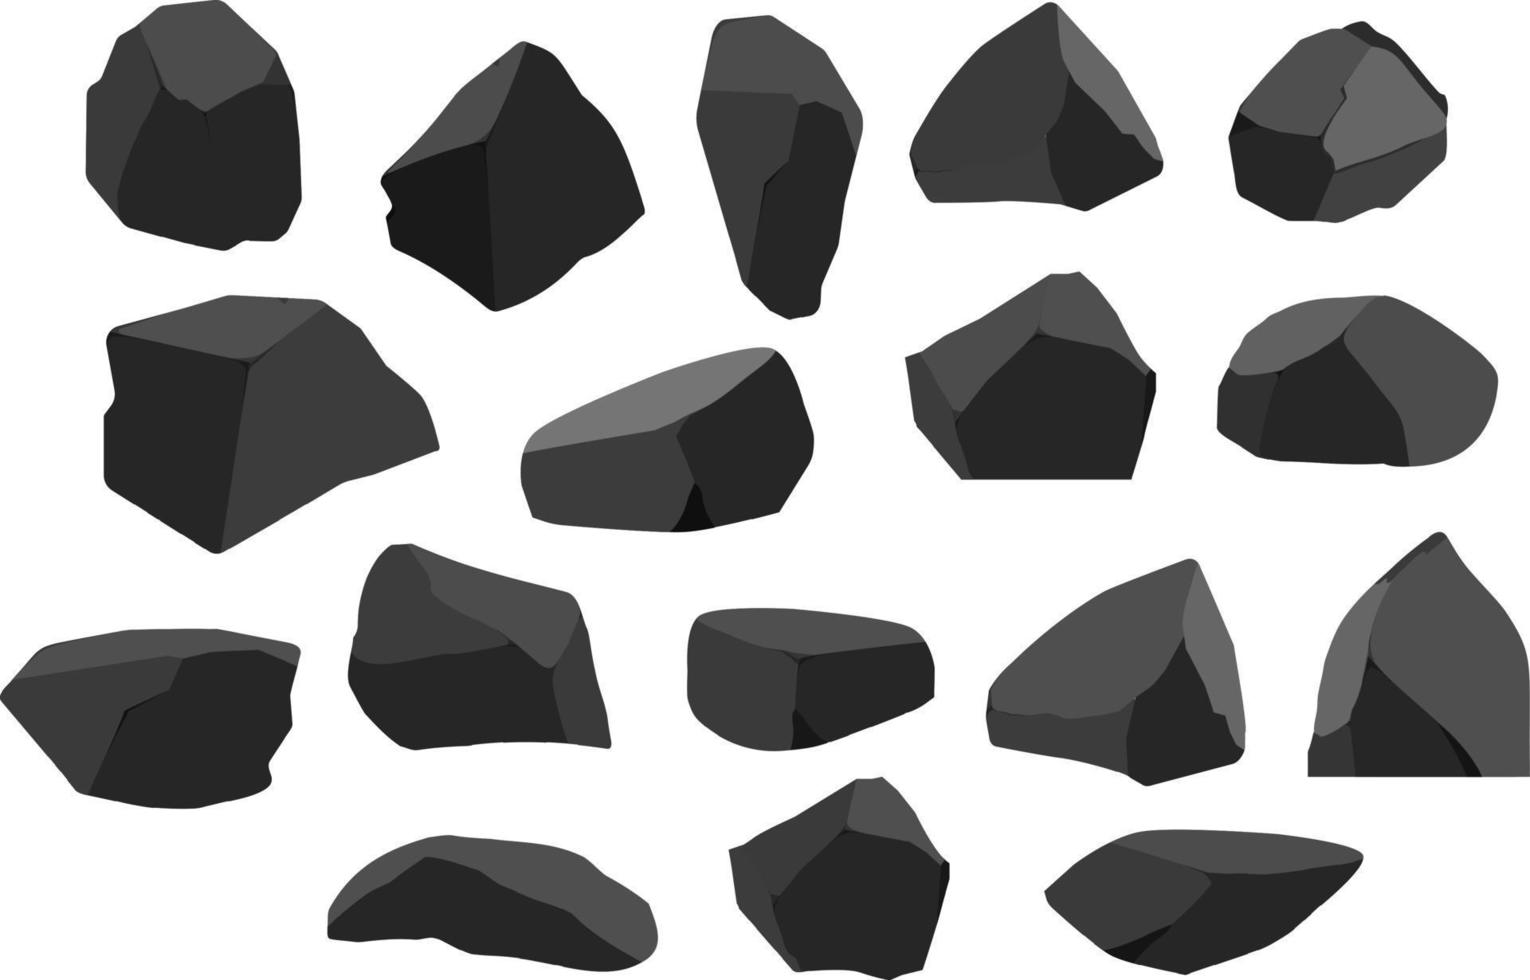 en uppsättning av svart träkol av olika former.samling av bitar av kol, grafit, basalt och antracit. de begrepp av brytning och malm i en min.rock fragment, stenblock och byggnad material. vektor